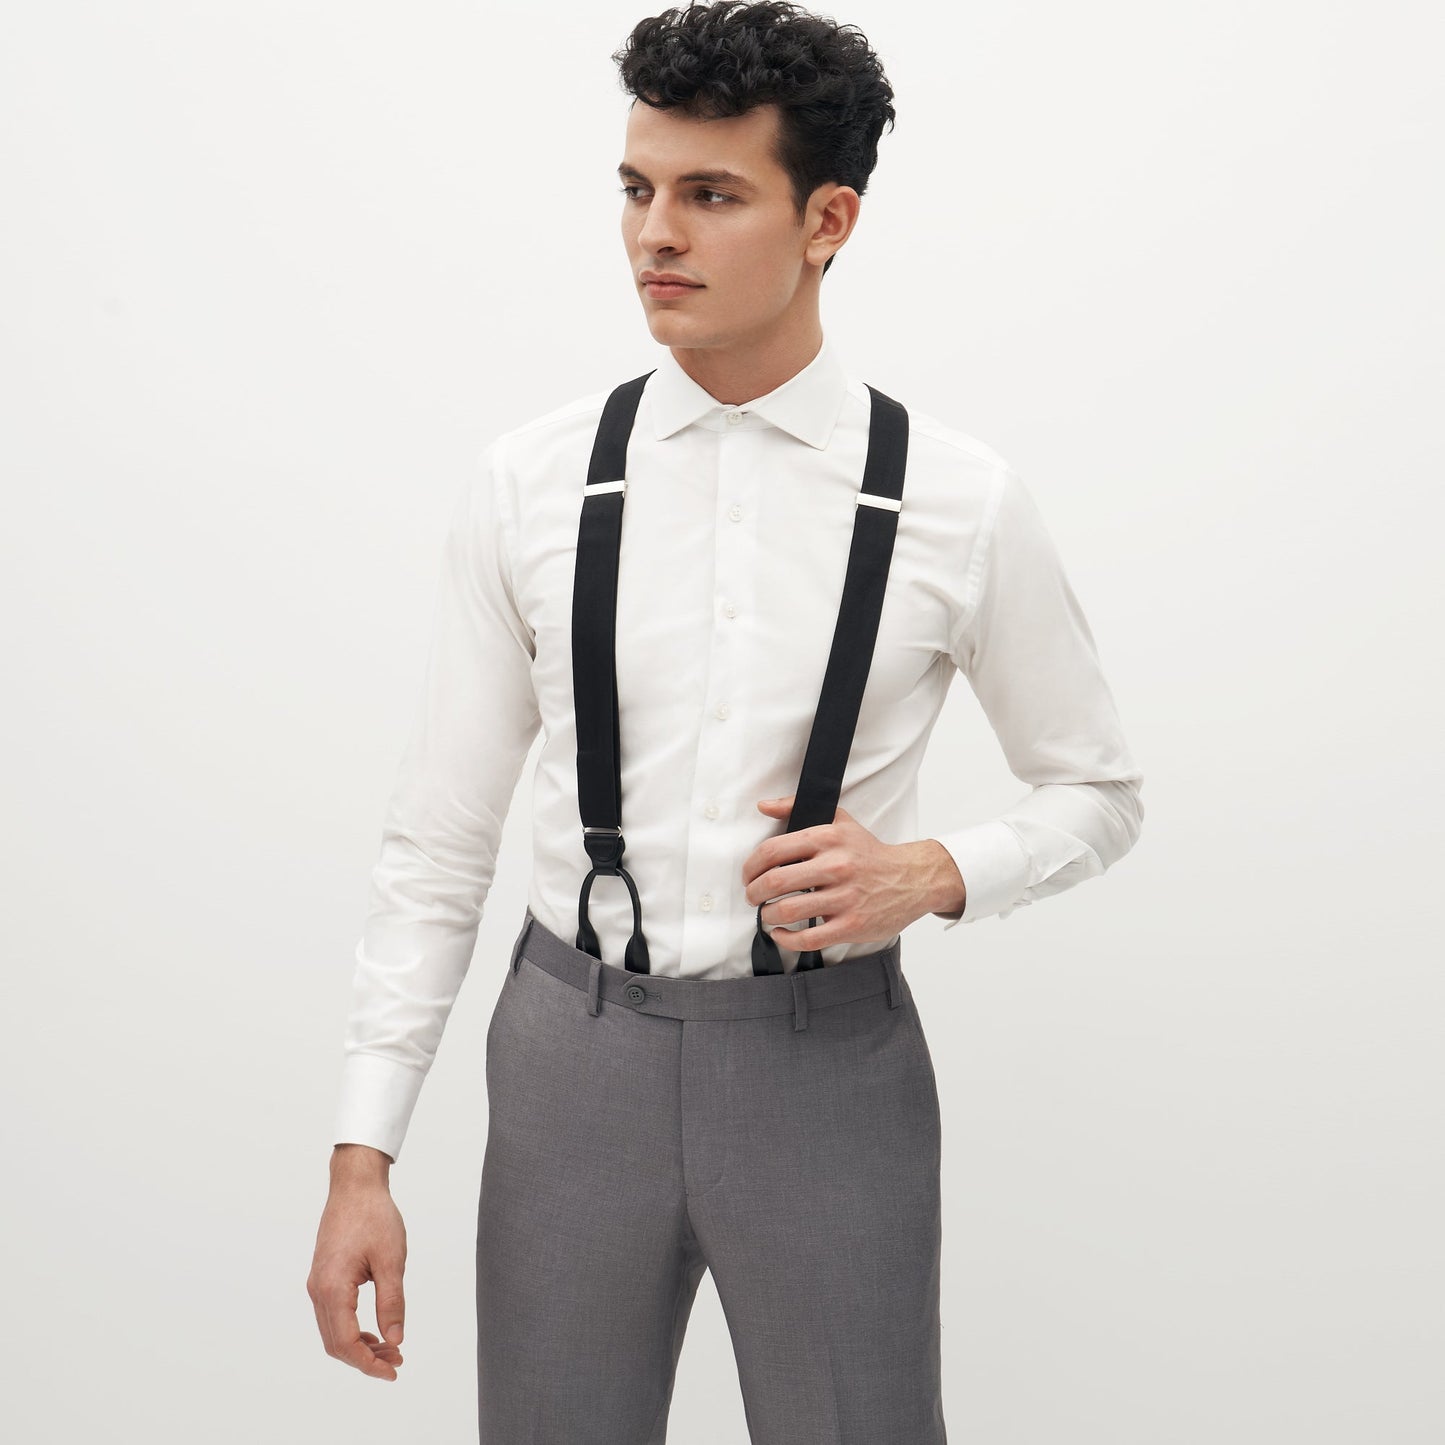 Grosgrain Solid Black Suspenders by SuitShop